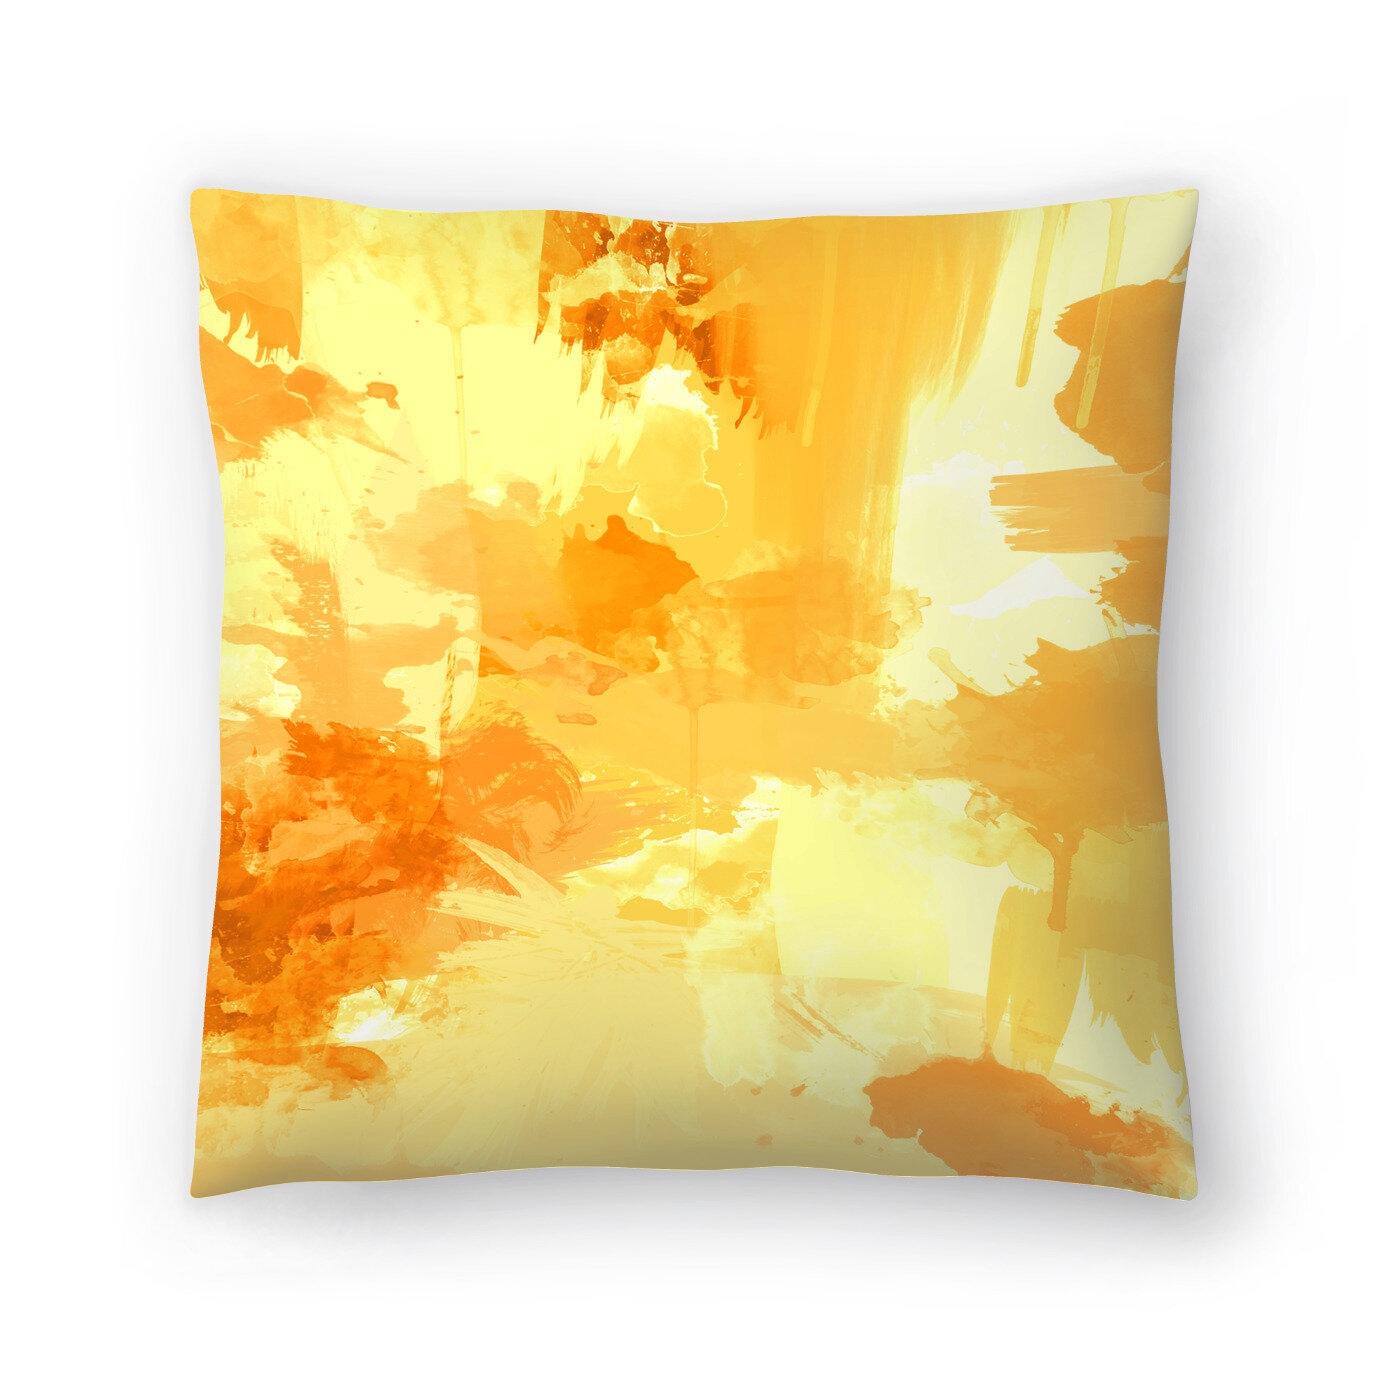 orange pillows